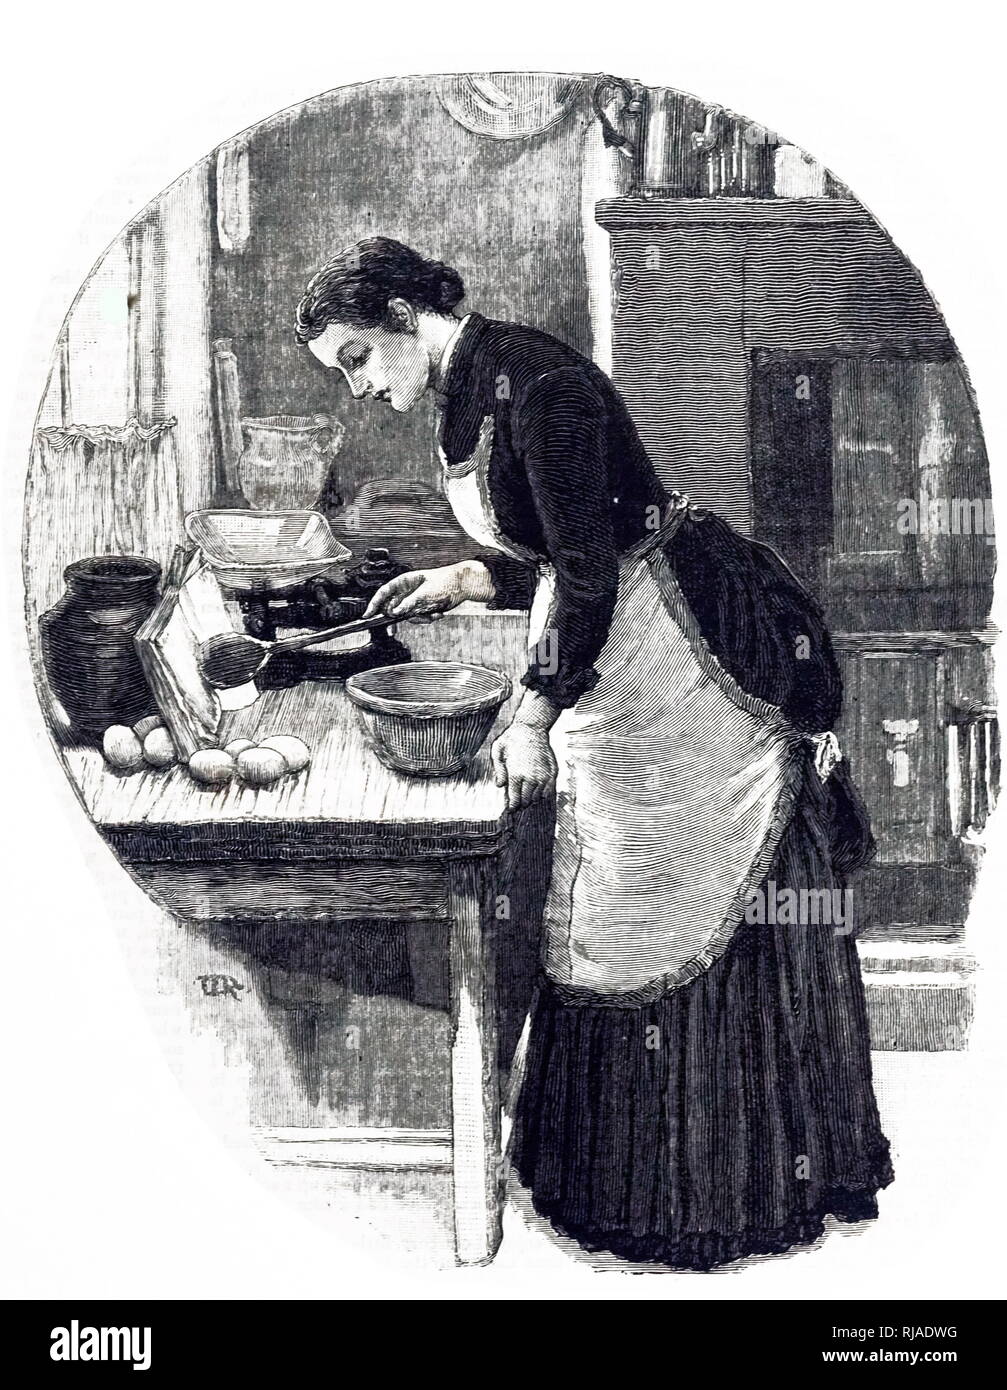 Une gravure représentant une femme sur le point de commencer à faire un gâteau. Derrière elle et à droite de la photo est une vue partielle d'une cuisine typique, avec le robinet de tirer de l'eau chaude visible. En date du 19e siècle Banque D'Images